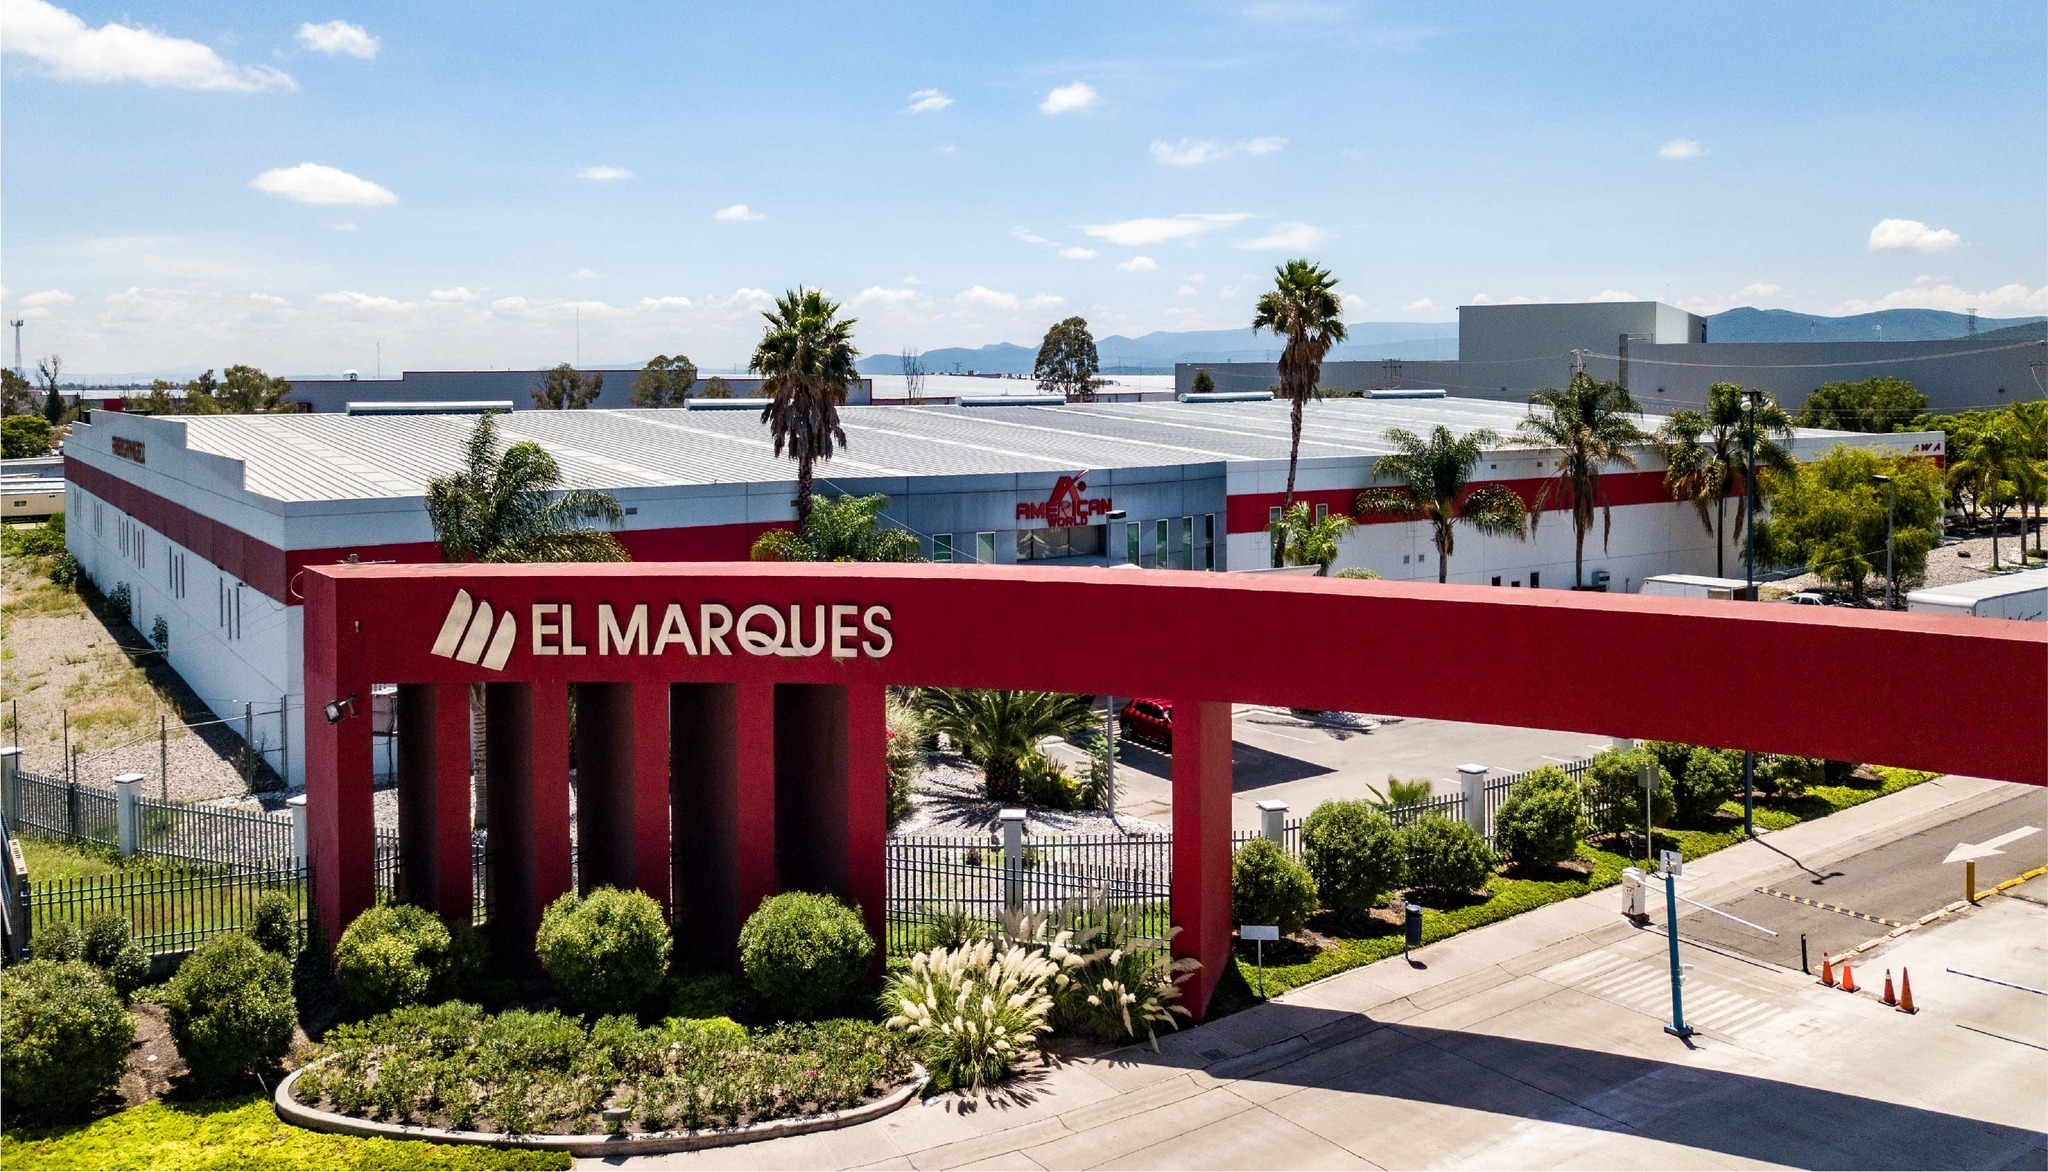 Planta de Kio Networks creará 250 empleos en El Marqués